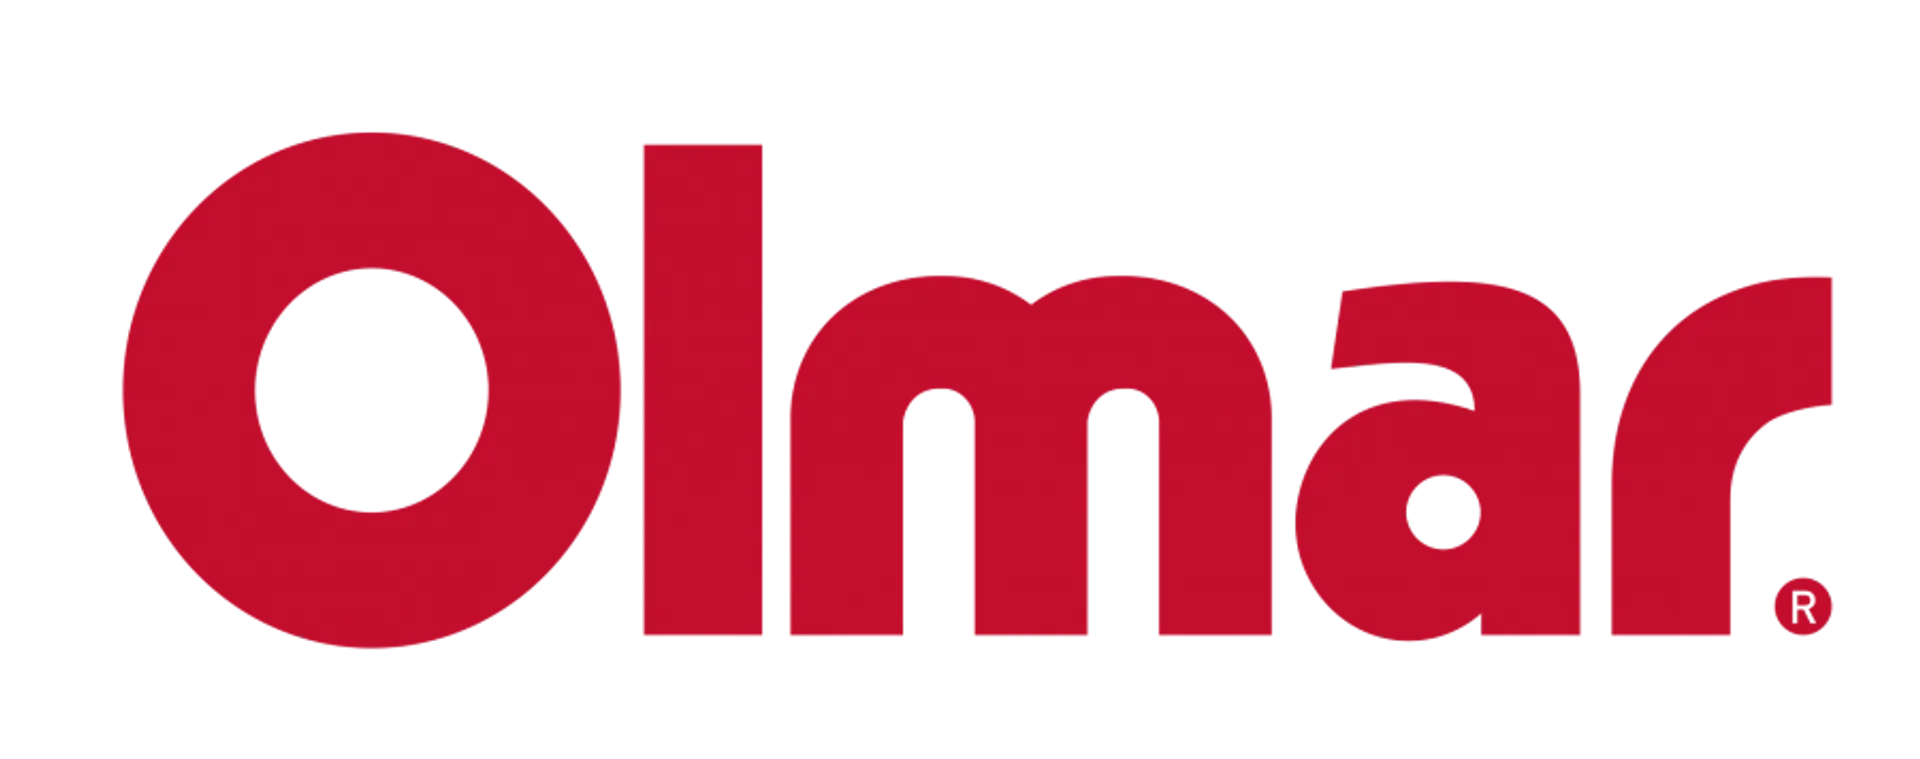 Olmar logo